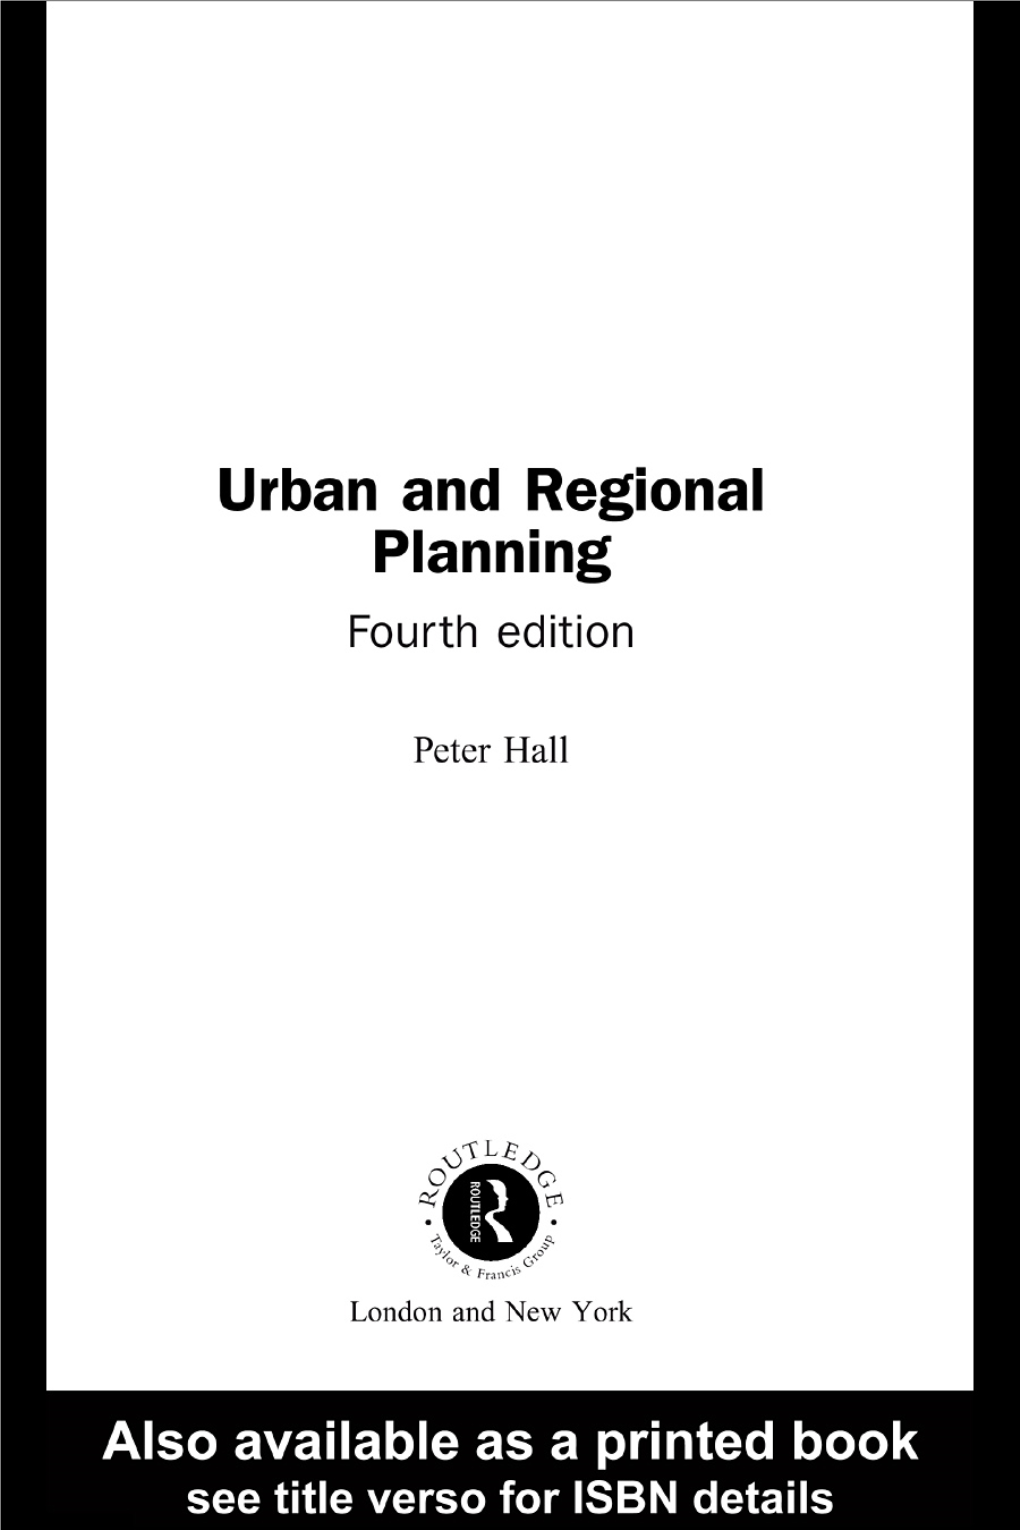 Urban and Regional Planning, Fourth Edition